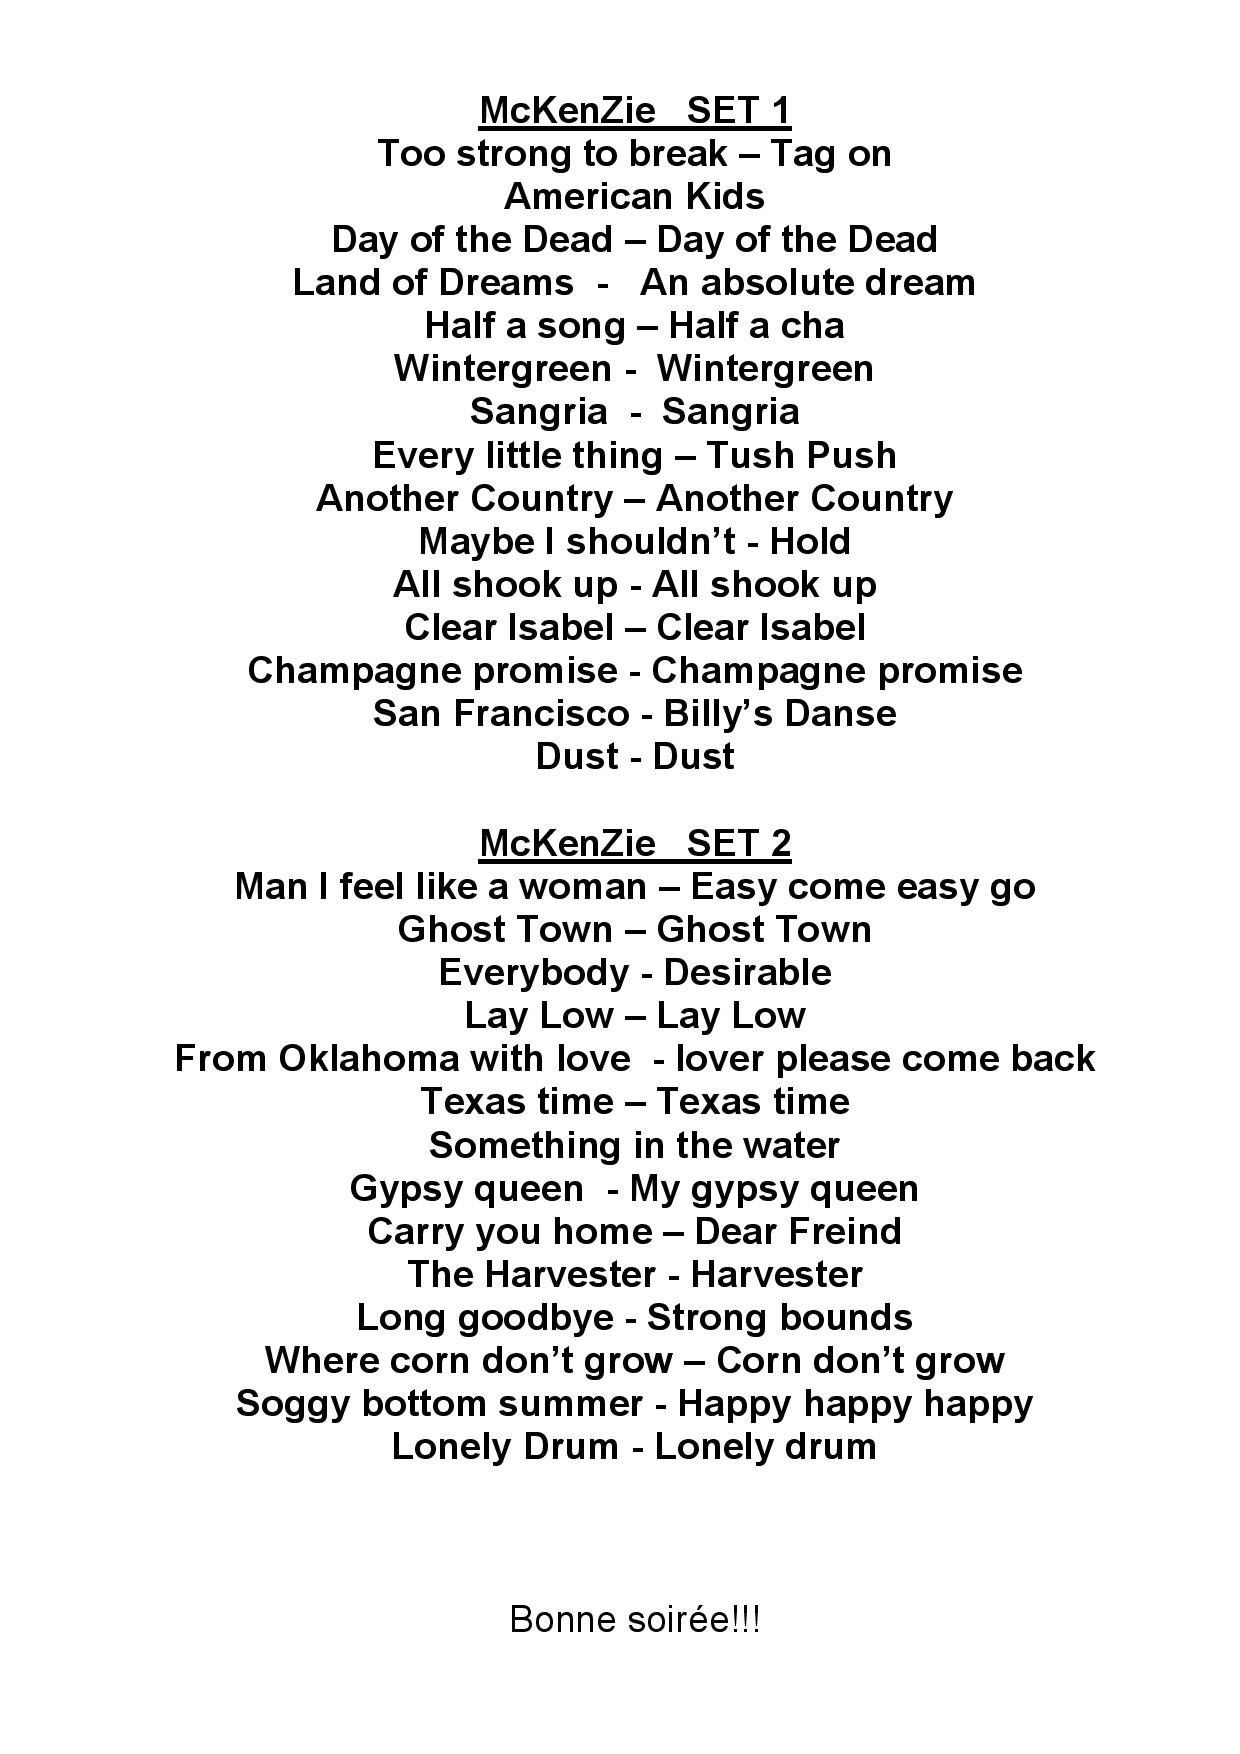 Mckenzie playlist octobre 2 page 001